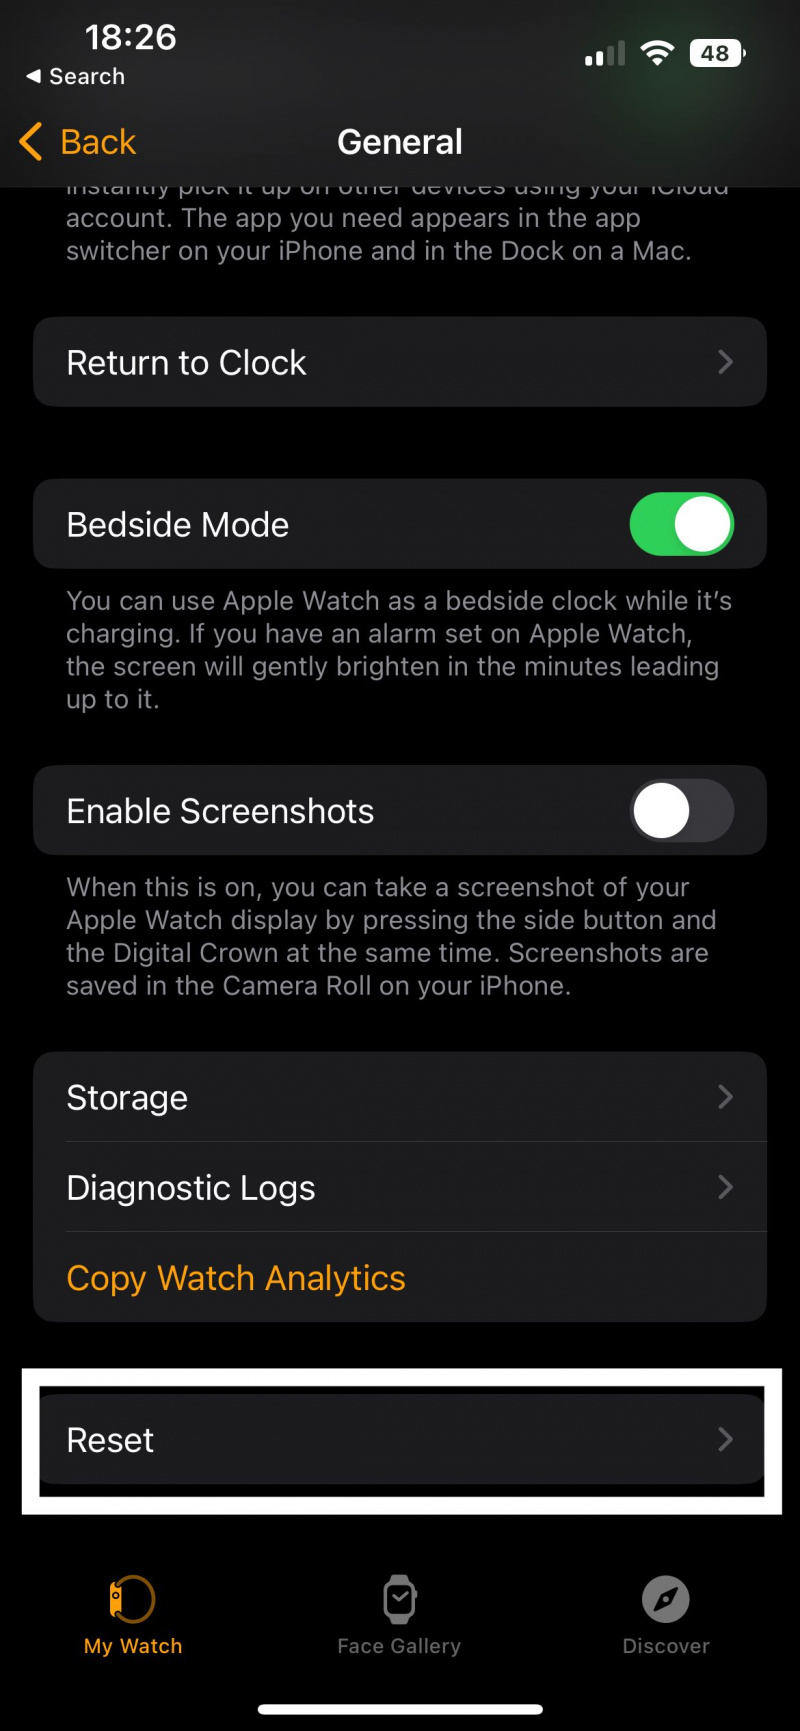   شاهد لقطة شاشة التطبيق التي توضح مكان النقر لإعادة تعيين Apple Watch-